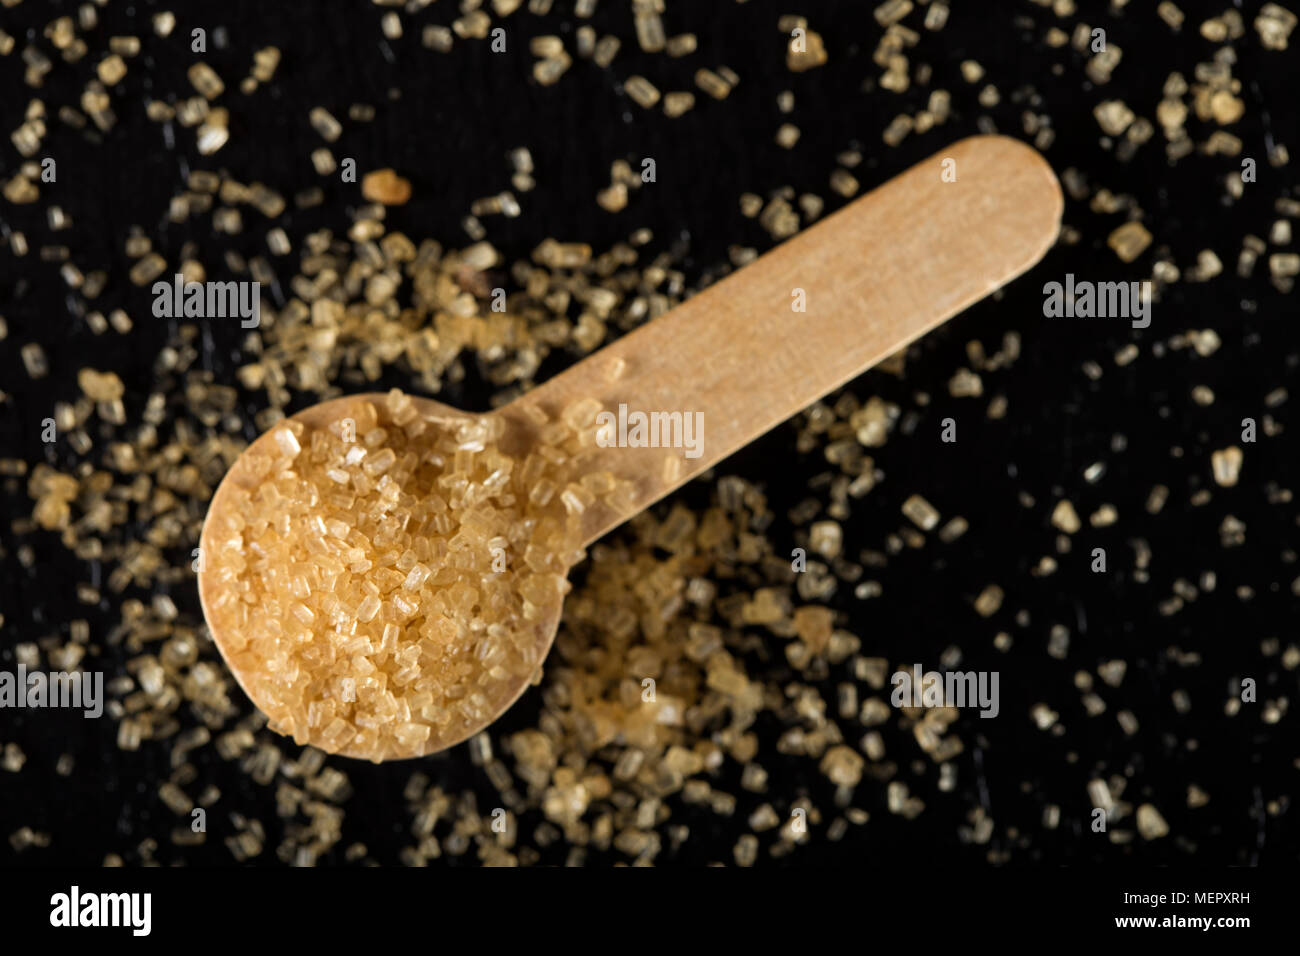 Piccolo cucchiaio woode riempito con lo zucchero di canna in ardesia scura Foto Stock